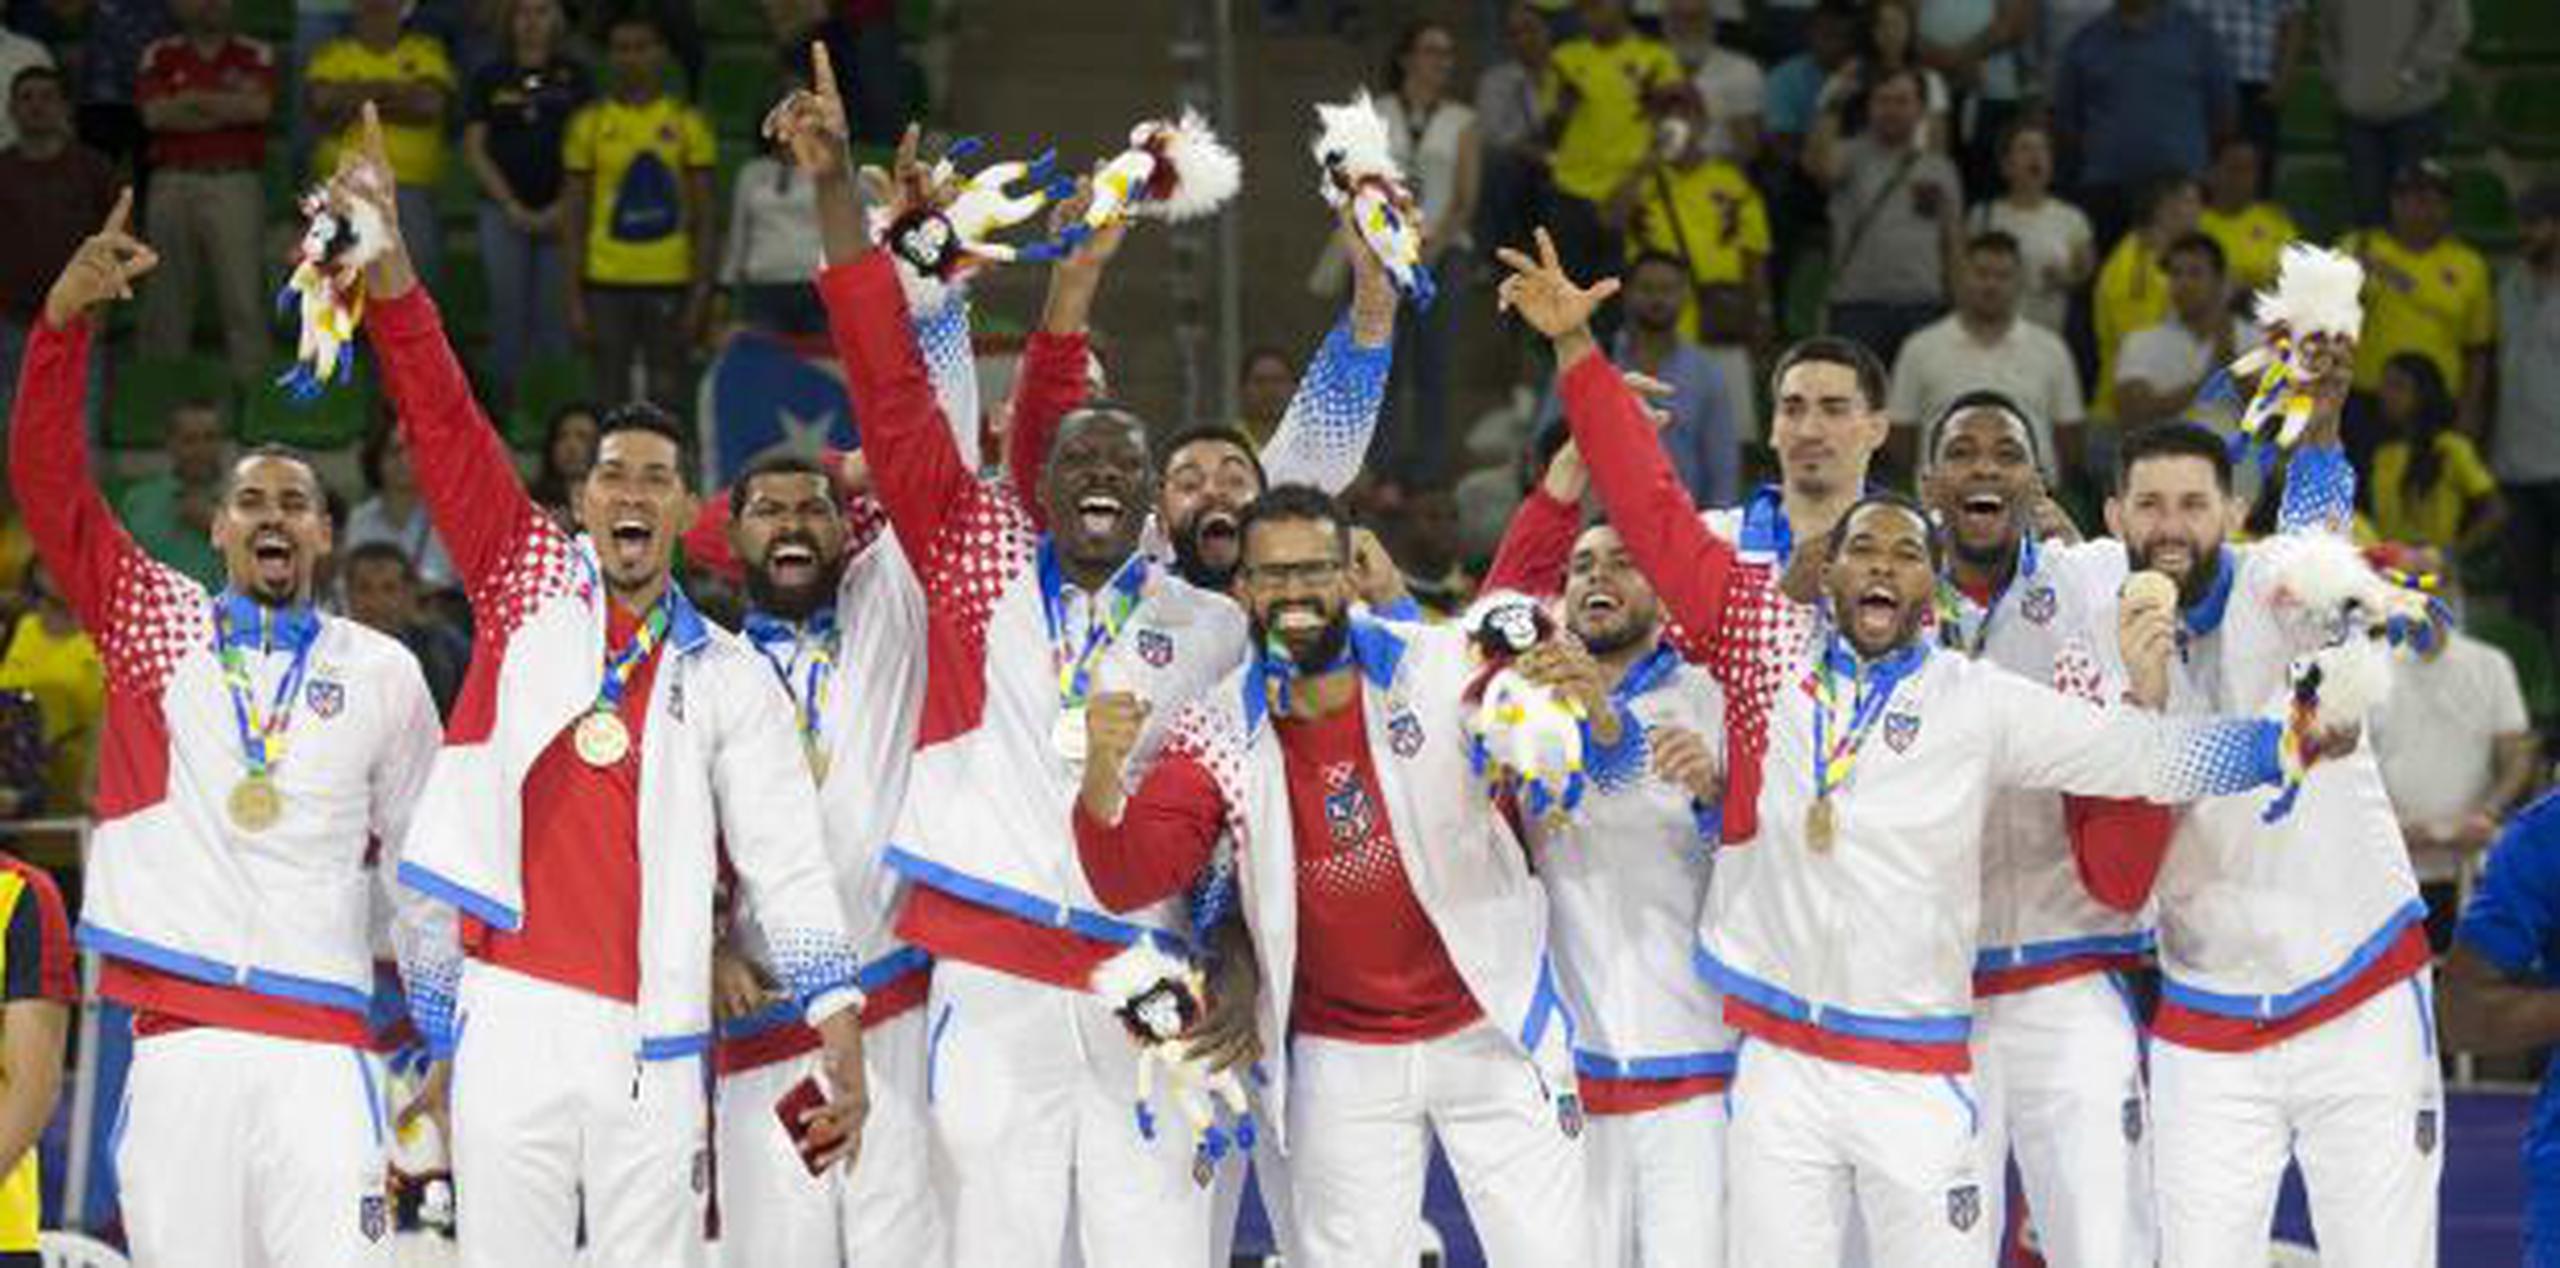 La selección tras recibir su medalla de oro. (Xavier Araujo | xavier.araujo@gfrmedia.com)